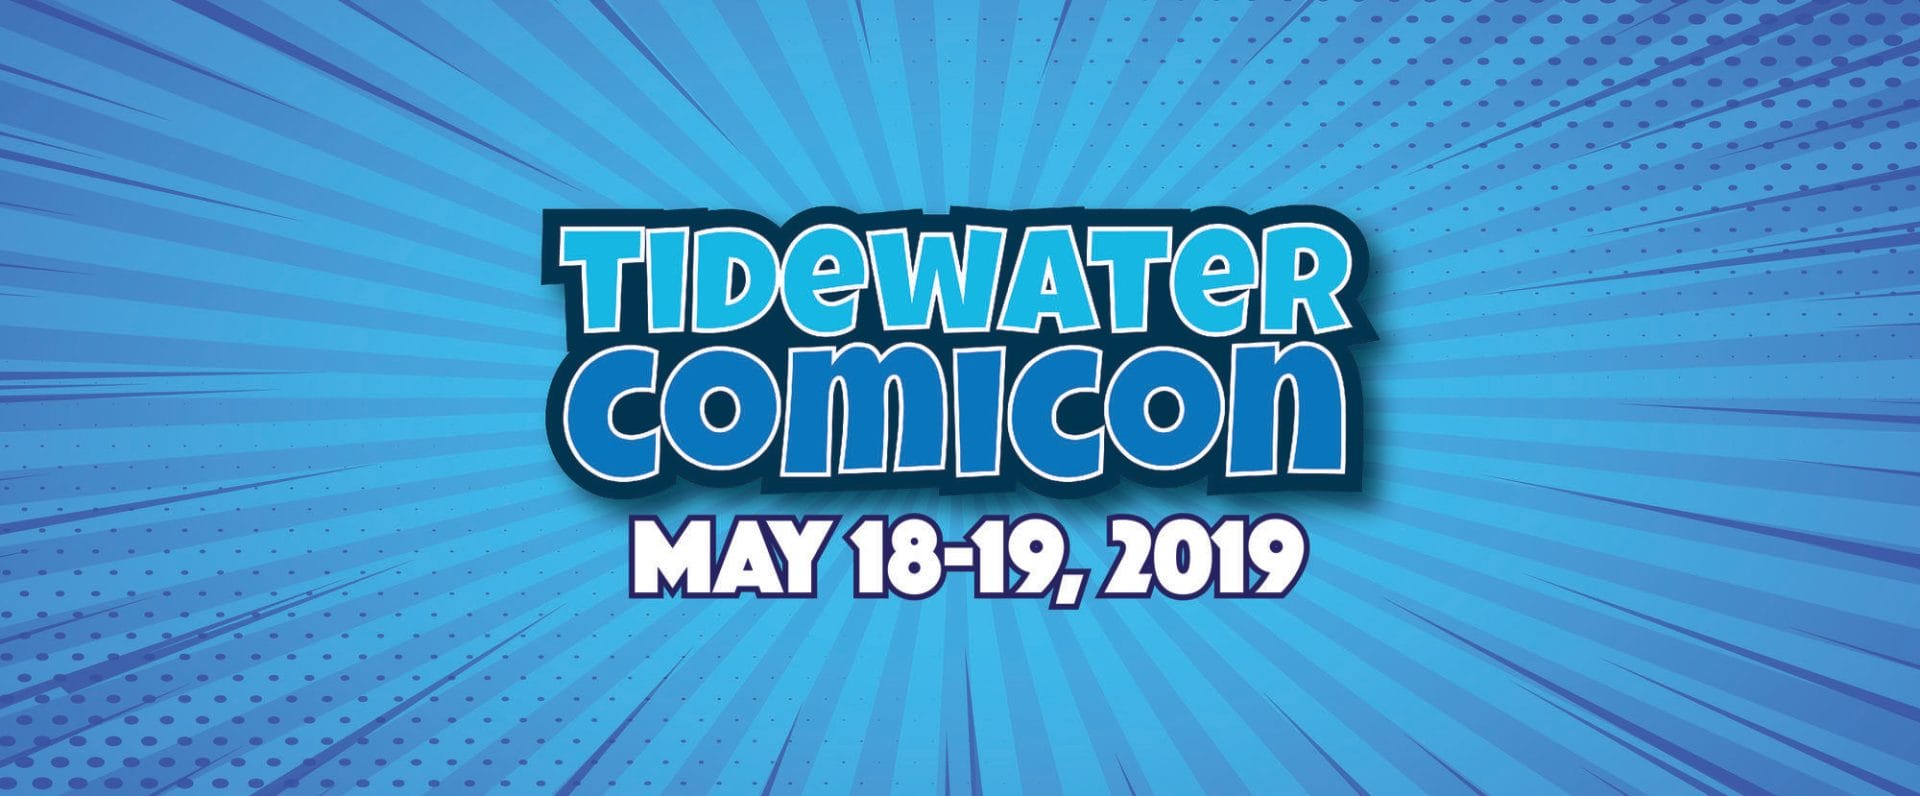 2019 Tidewater Comicon